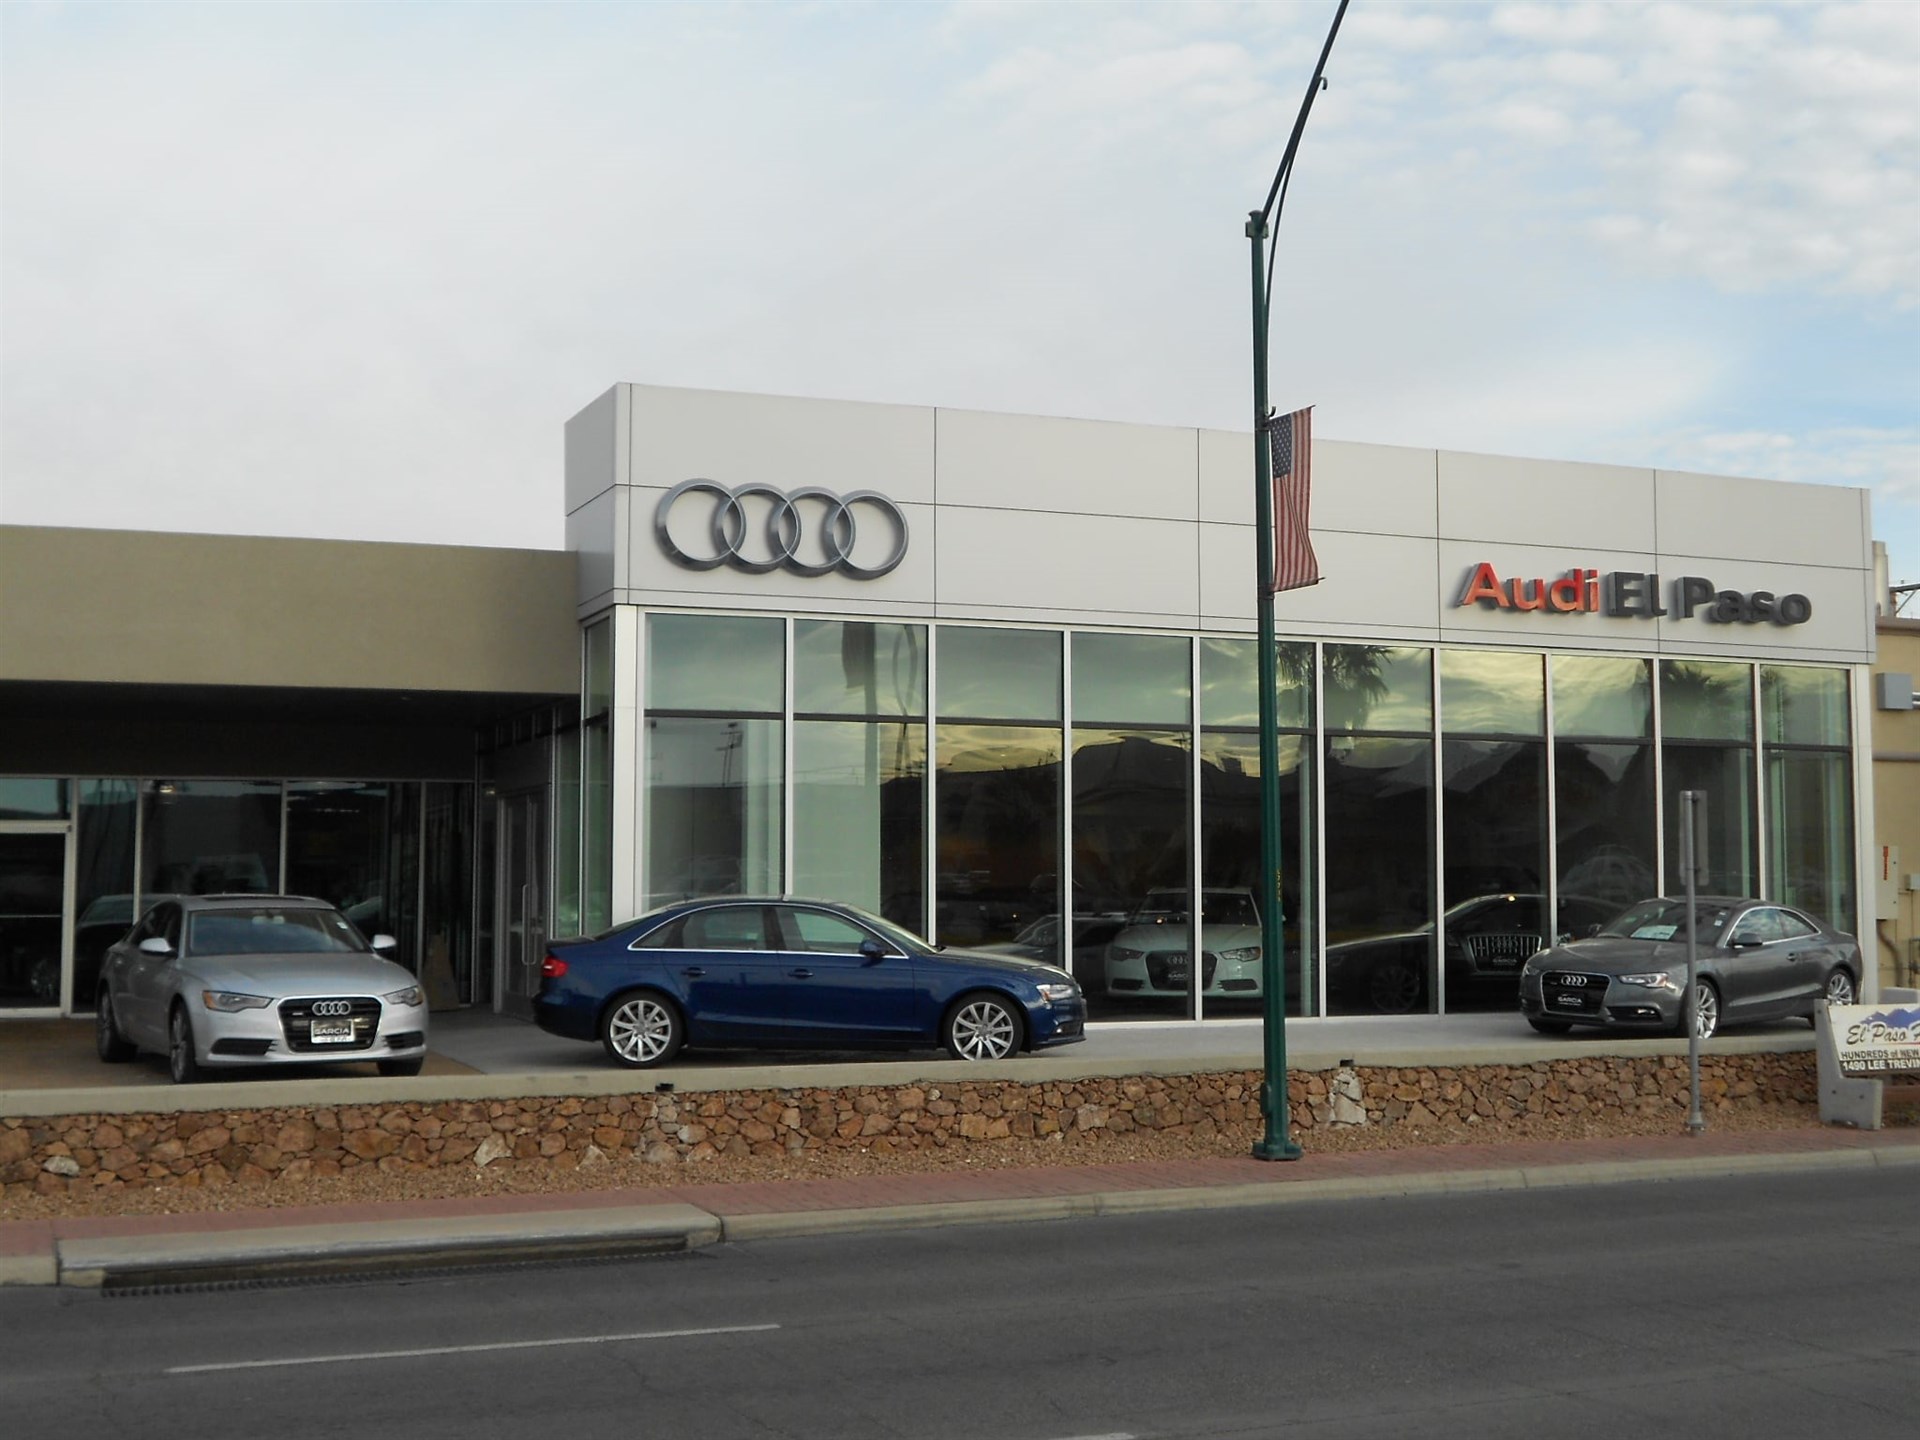 Audi El Paso